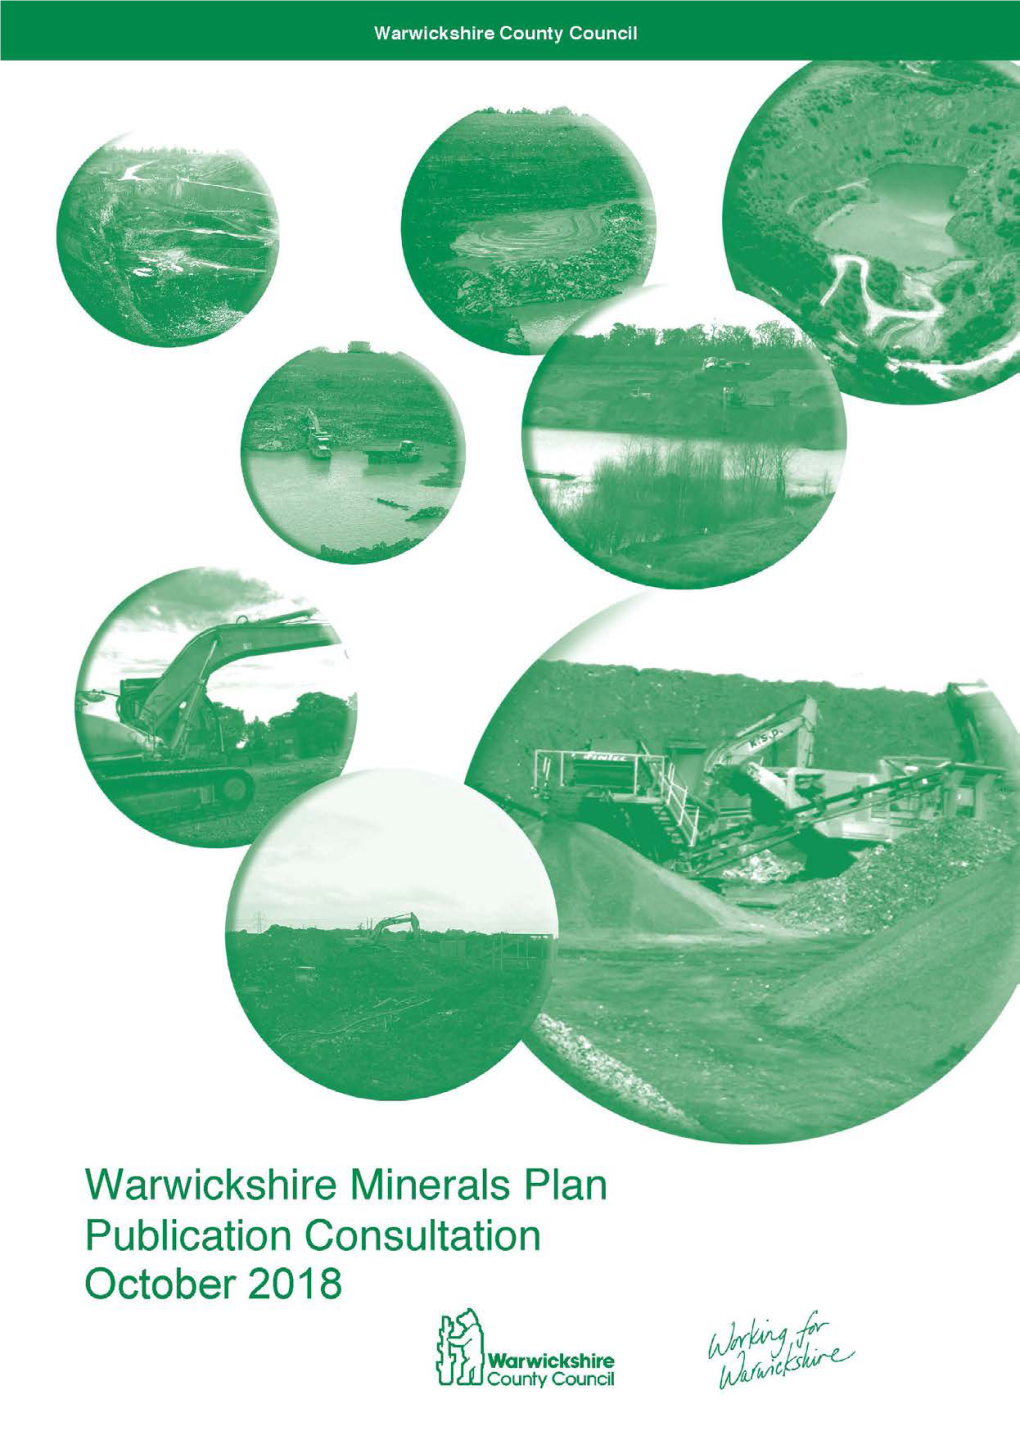 Minerals Infrastructure in Warwickshire – 124 Aggregate Minerals